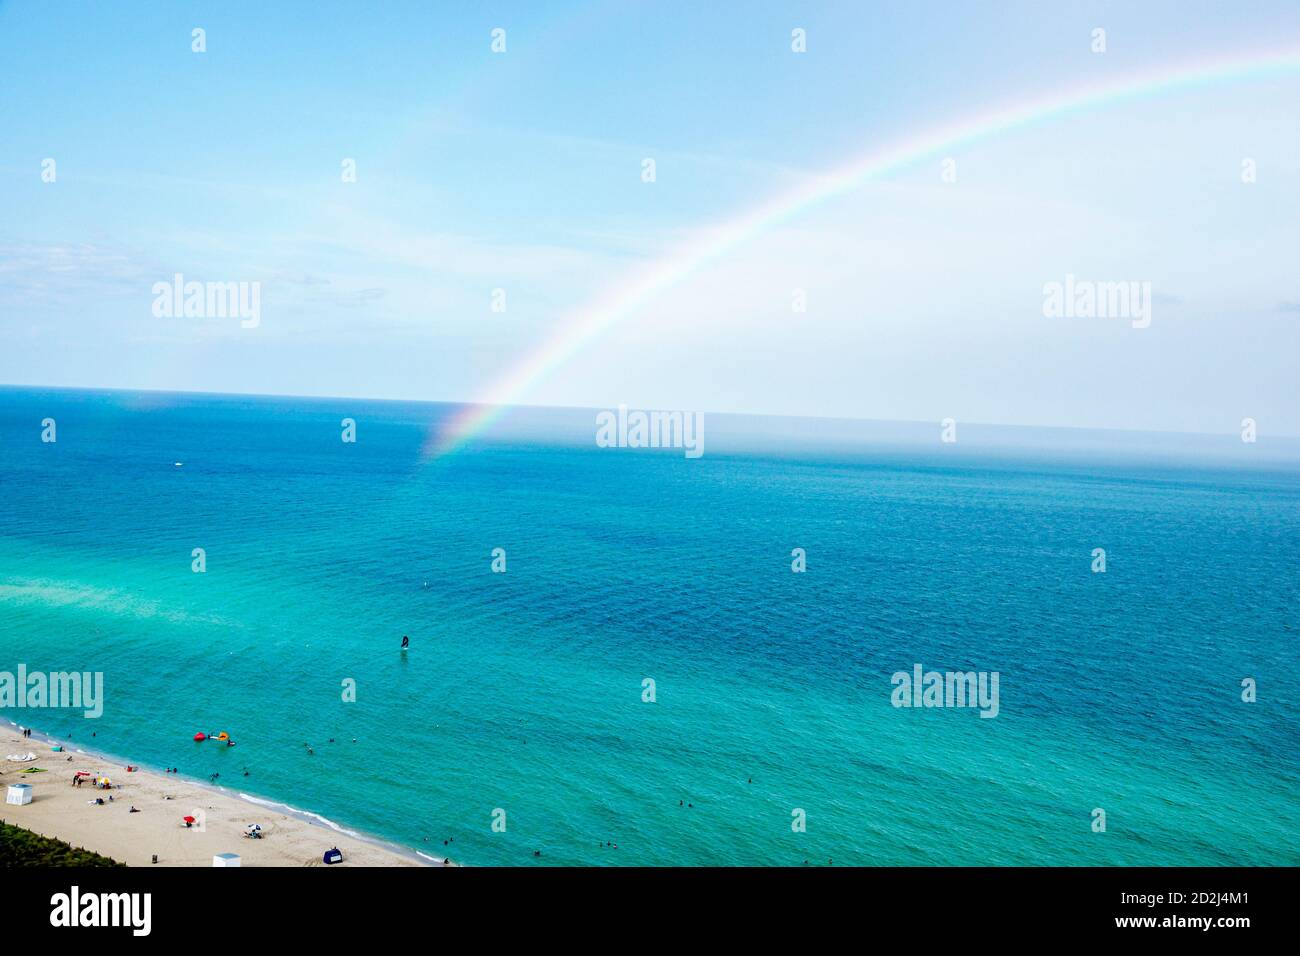 Miami Beach Florida, Atlantischer Ozean Wasser, Sand, Wasser, Regenbogen Regenbogen Bogen, Besucher reisen Reise touristischer Tourismus Wahrzeichen Kultur Cu Stockfoto